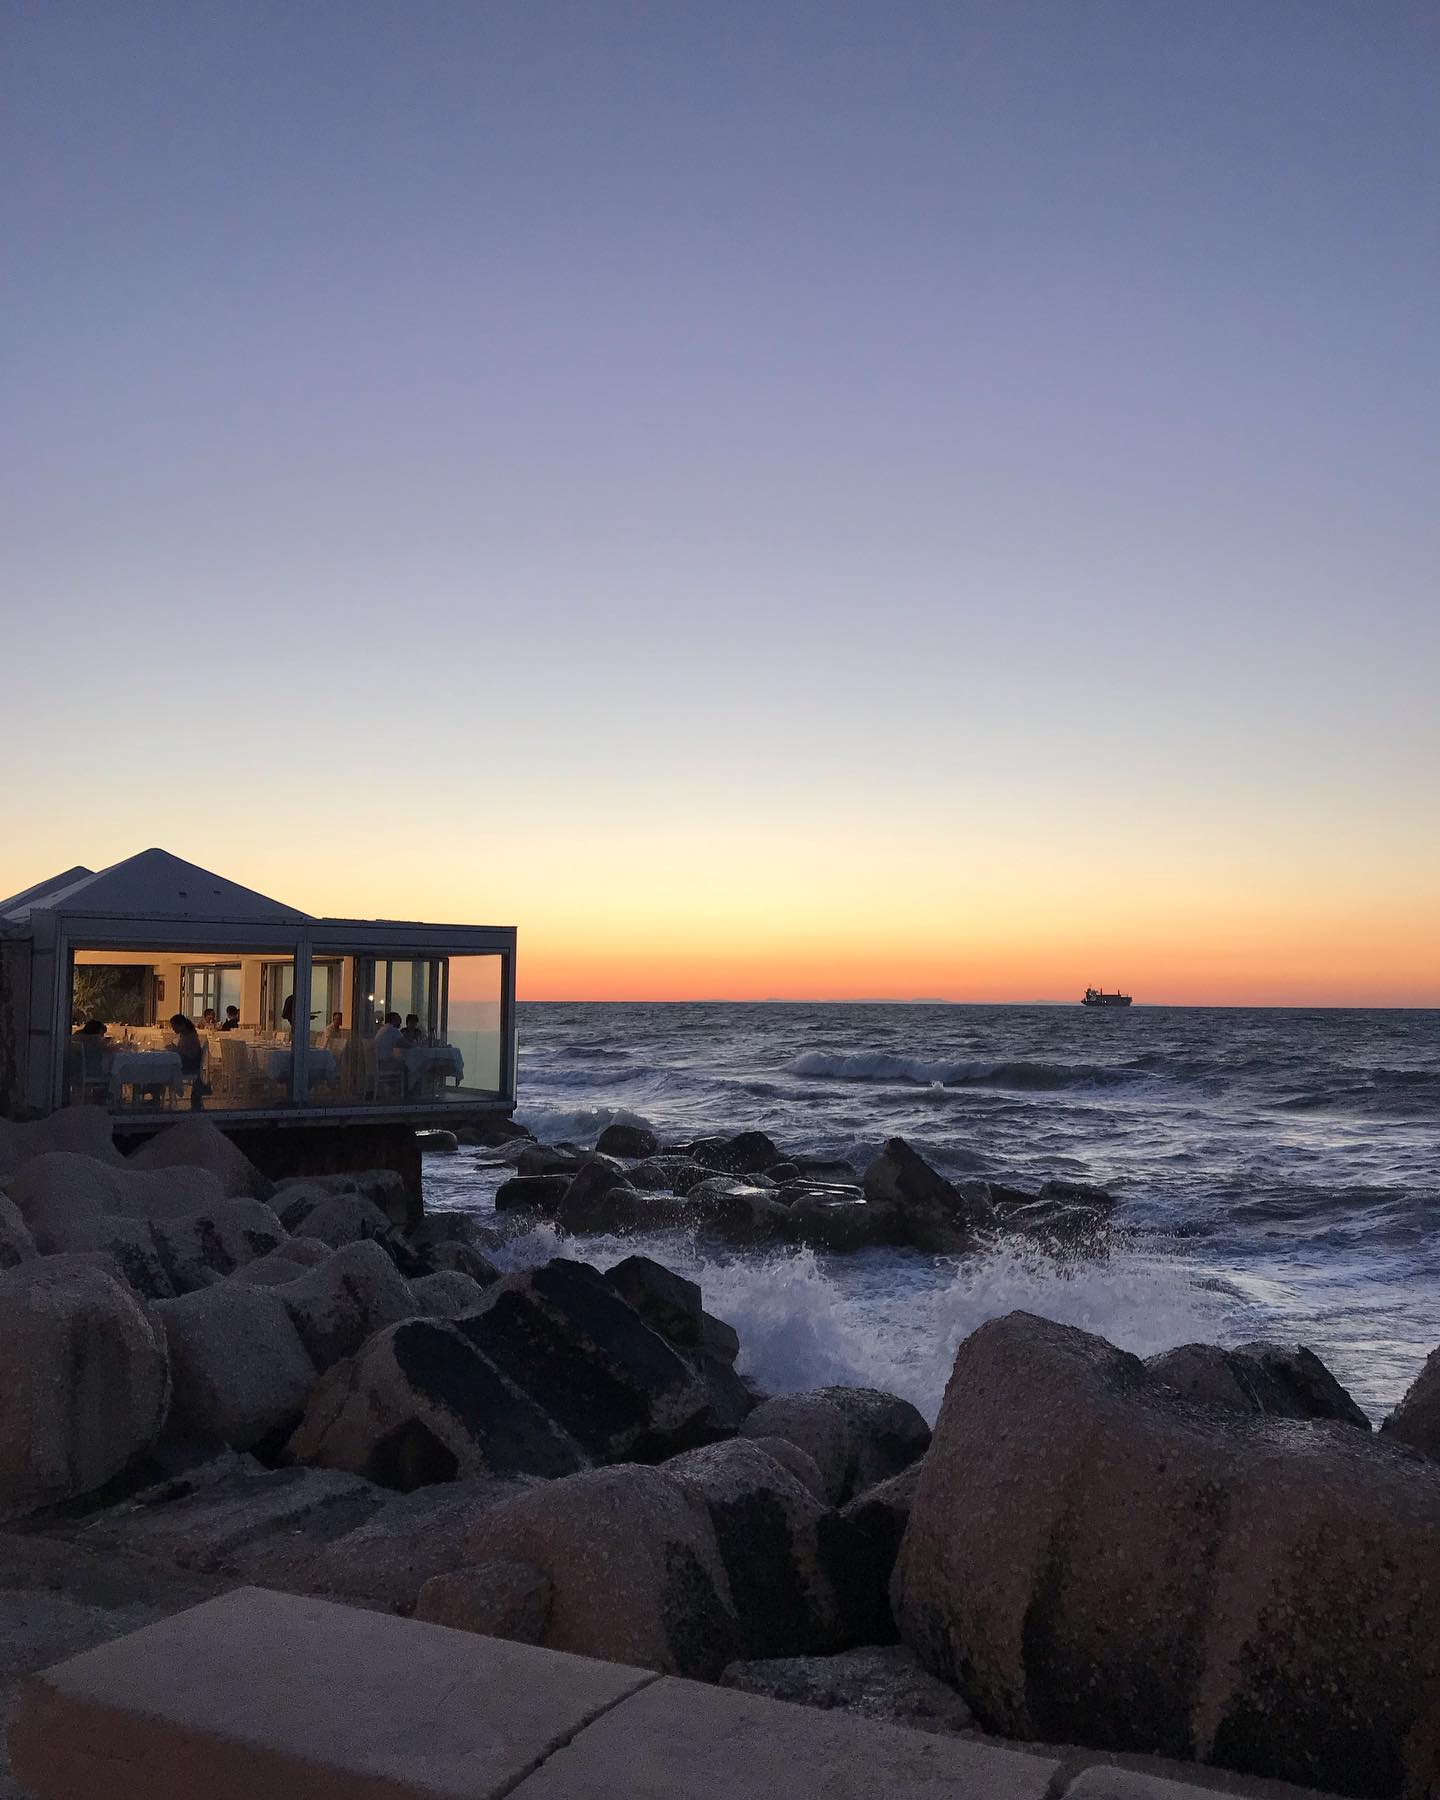 un ristorante sugli scogli fotografato al tramonto, con le onde mosse dal maestrale